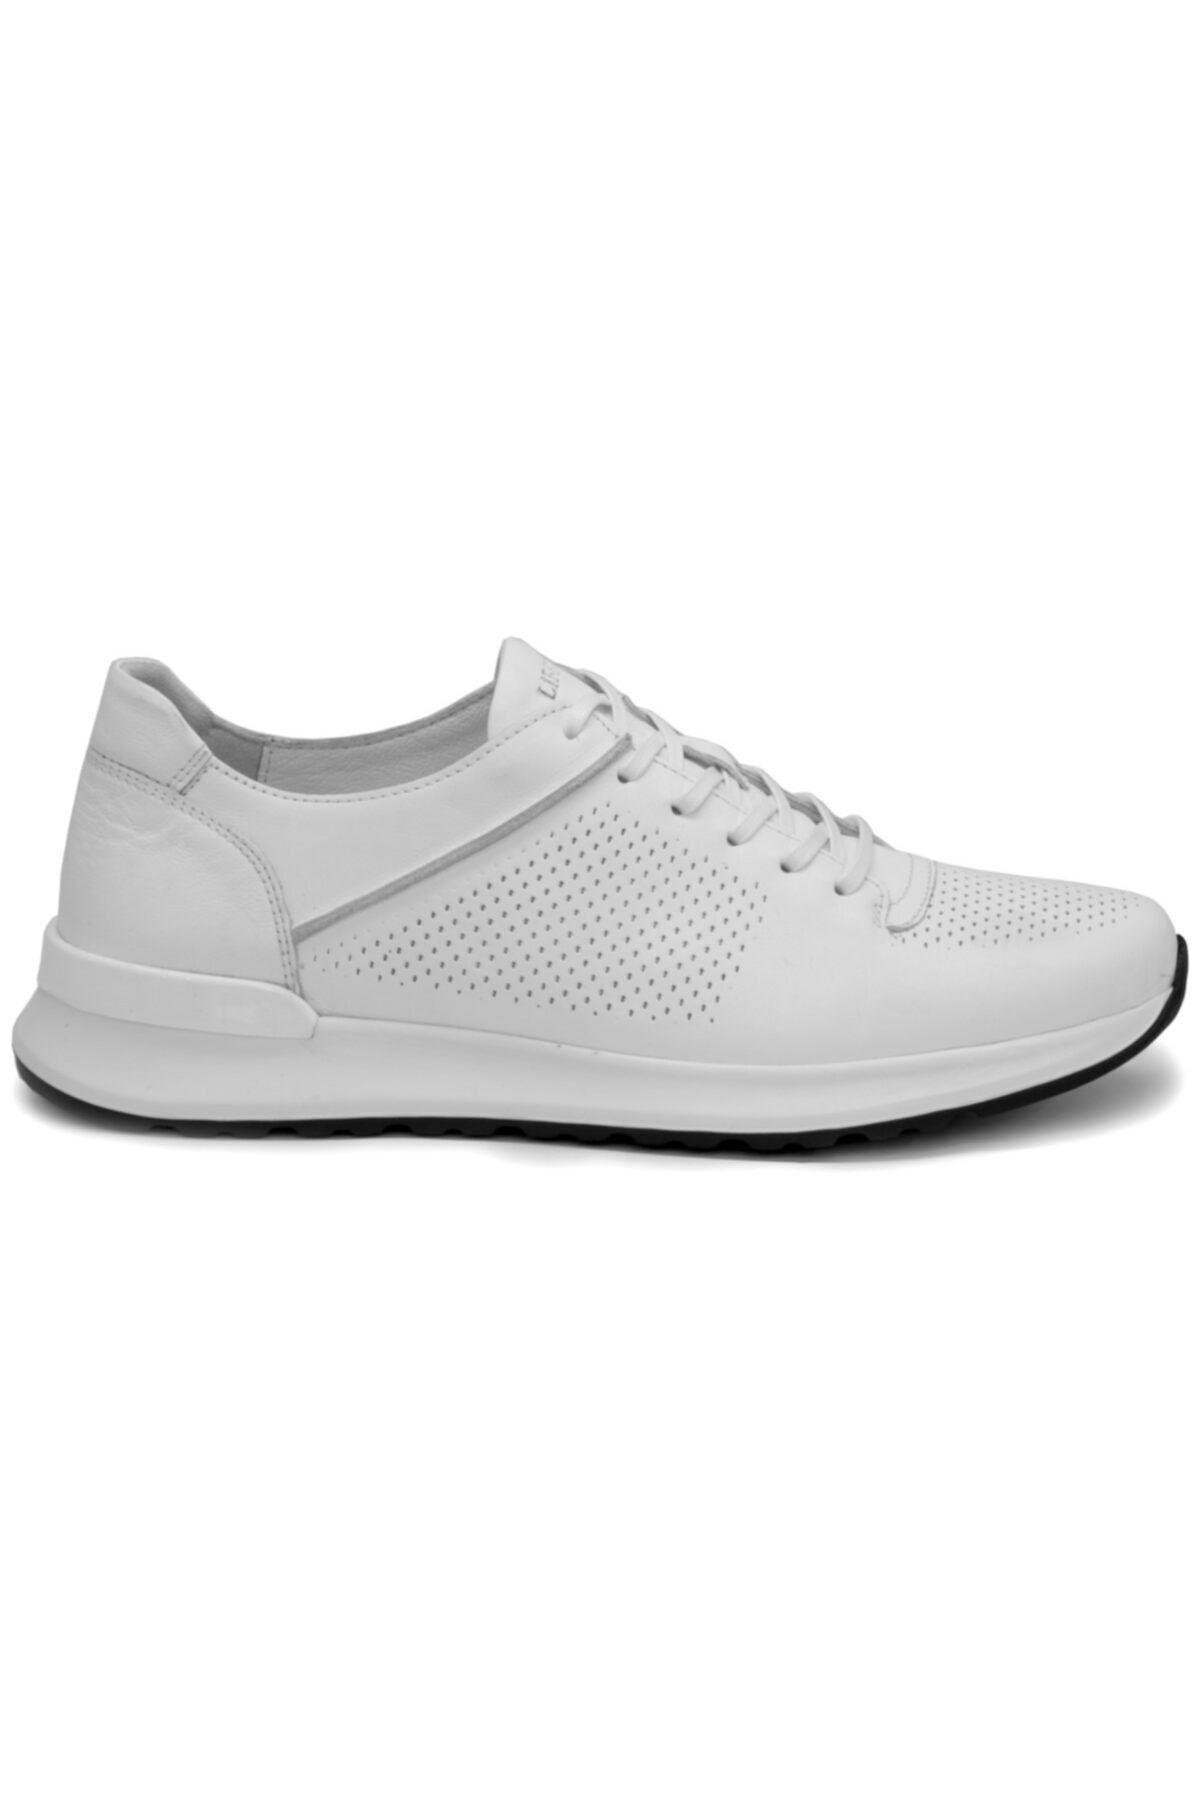 Libero 3045 Beyaz Renk Hakiki Deri Günlük Erkek Ayakkabı